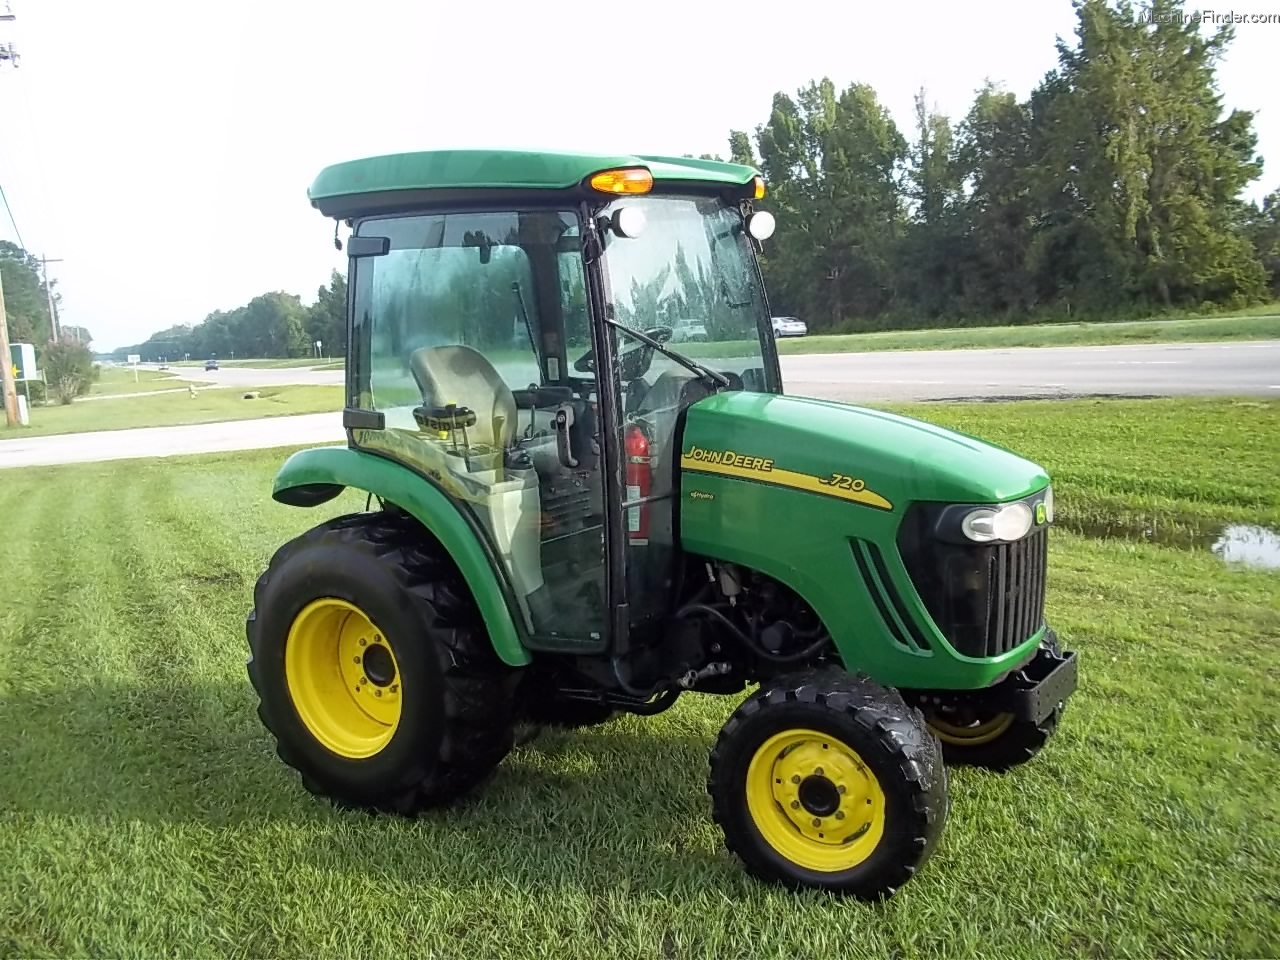 JOHN DEERE 3720 For Sale - TractorHouse.com. john deere 3720 44 hp tractor....